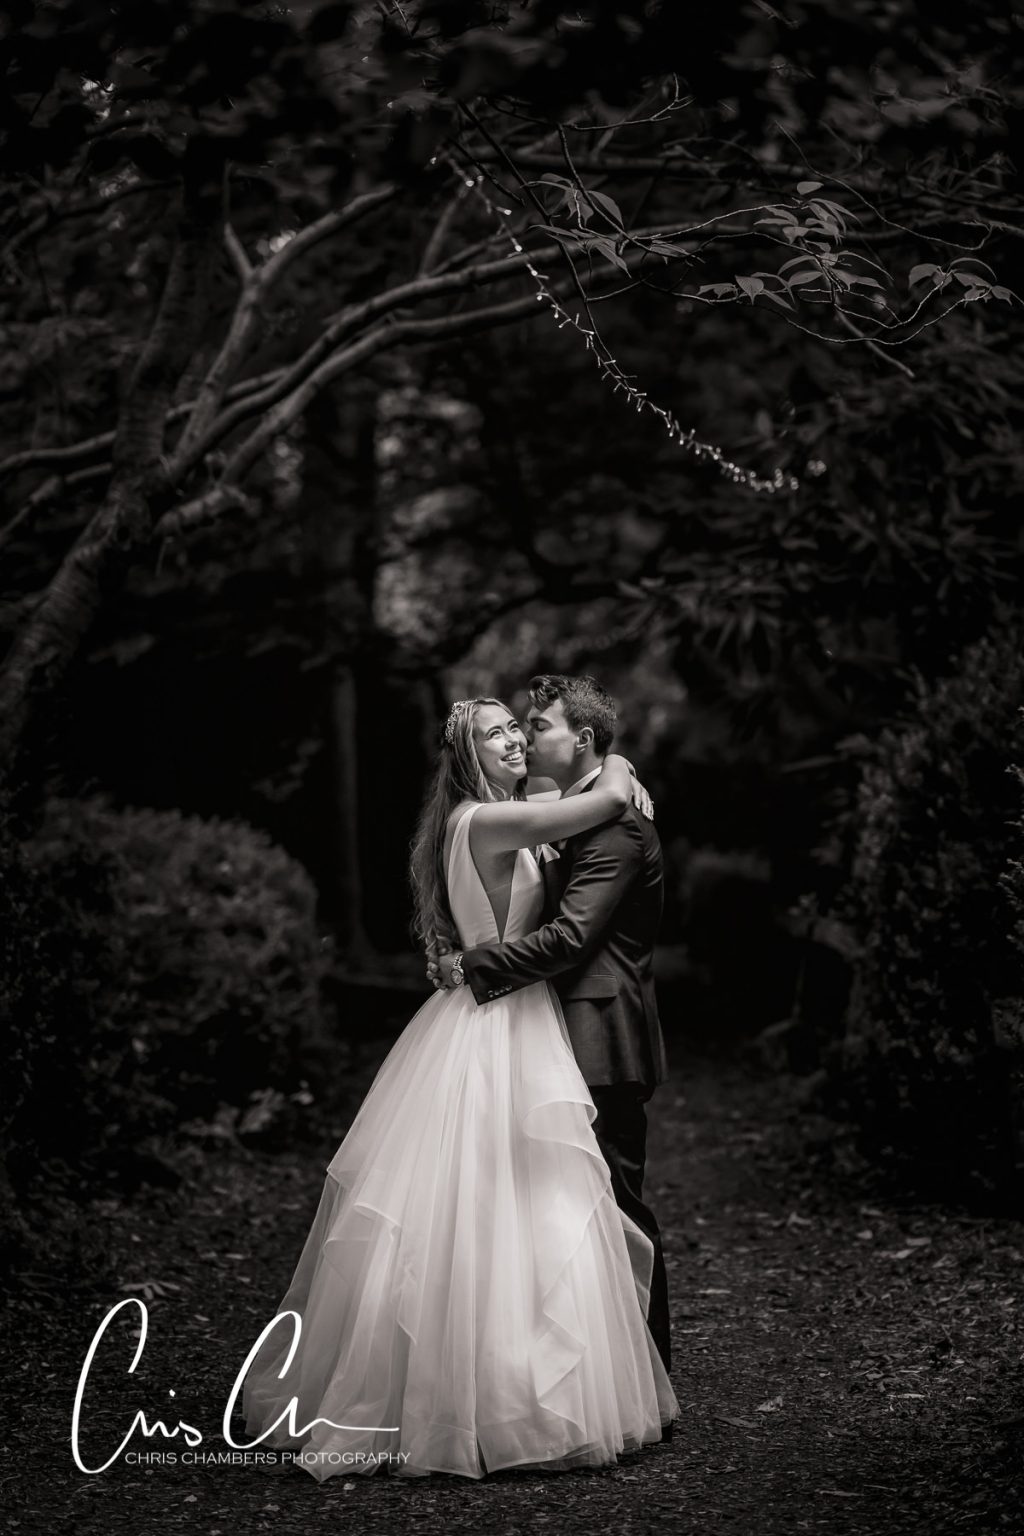 Hazlewood Castle Wedding Photography from kimberley and Bens wedding day